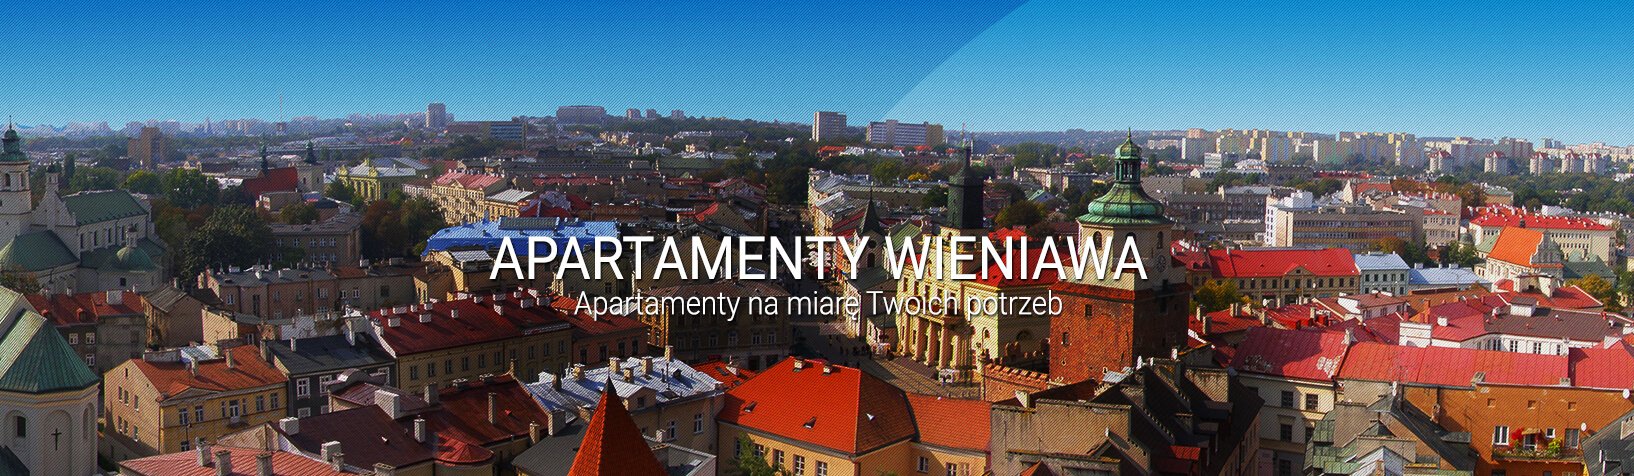 Apartamenty Wieniawa - mieszkania do wynajęcia - Lublin